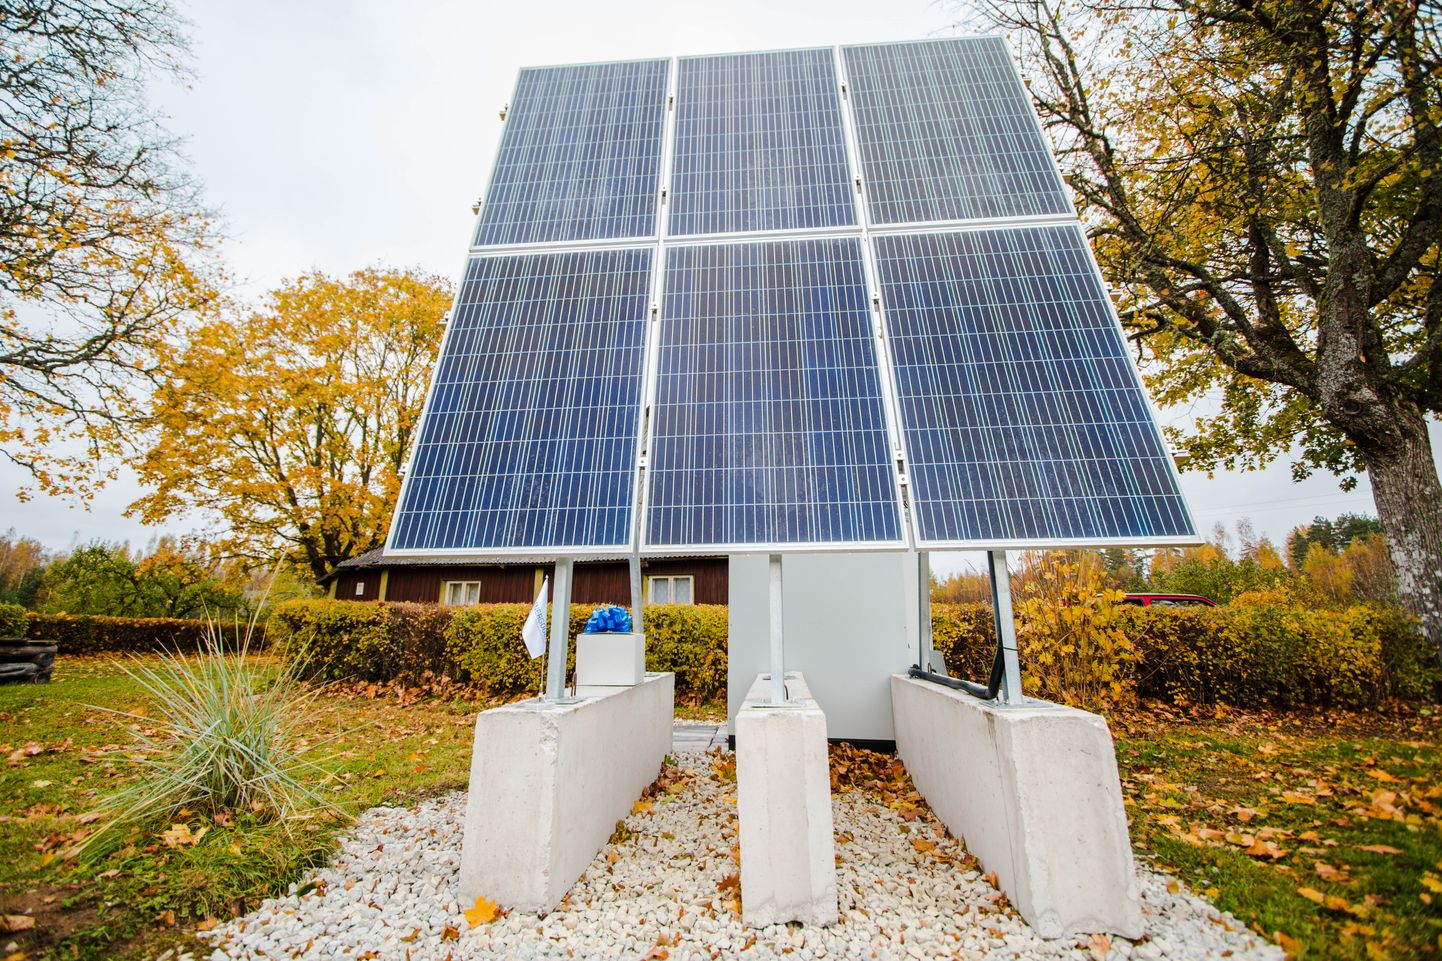 Elektrilevi alustas kolm aastat tagasi juhtmevaba päikesepaneelidel elektrijaama katsetamist neljas talus. Ettevõtte hinnangul kujunes projekt edukaks.